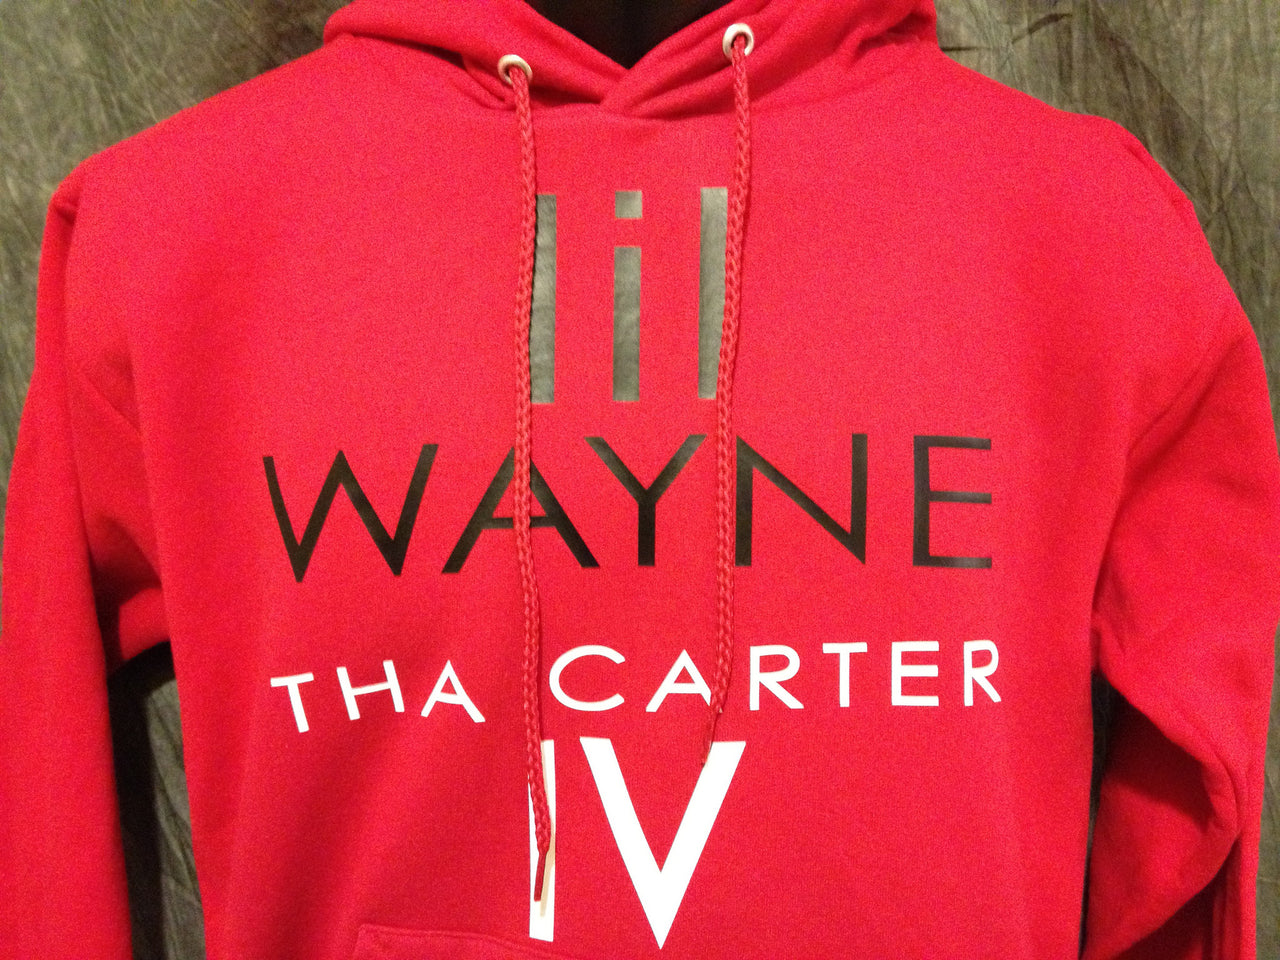 Lil Wayne Tha Carter 4 Hoodie - TshirtNow.net - 3